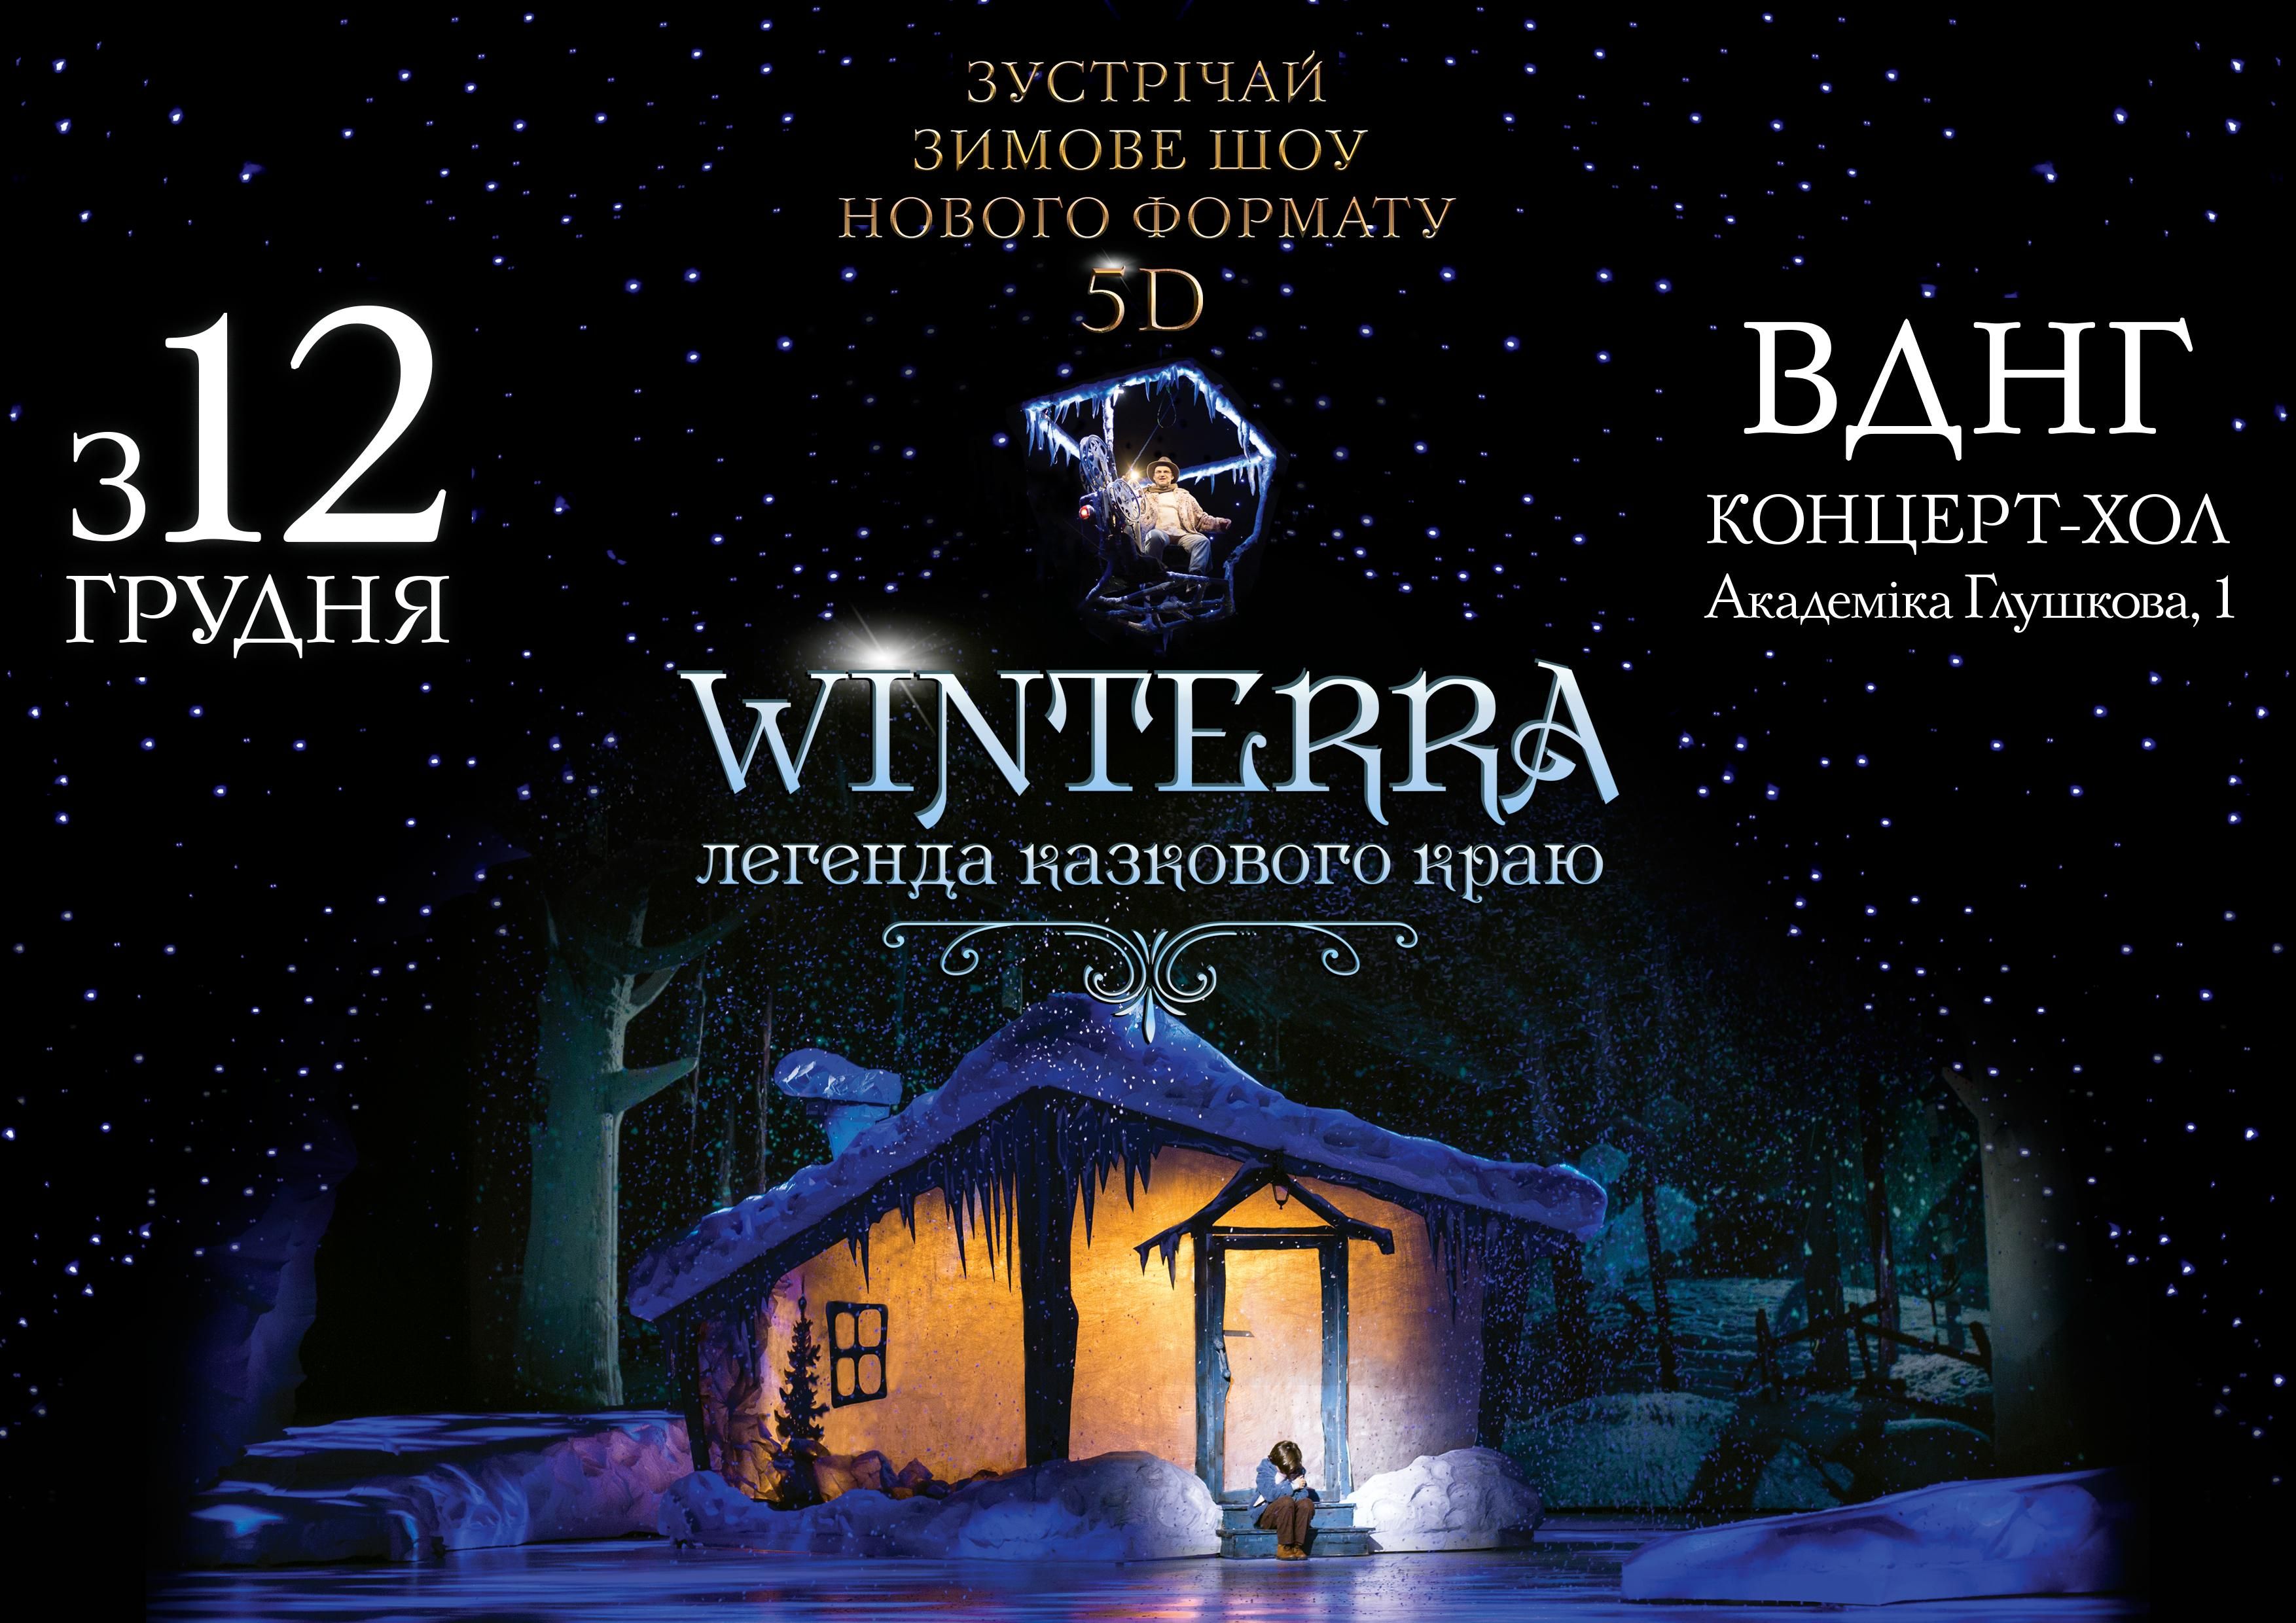 Зимове шоу "Winterra. Легенда казкового краю" повертається у 5D: що про це треба знати